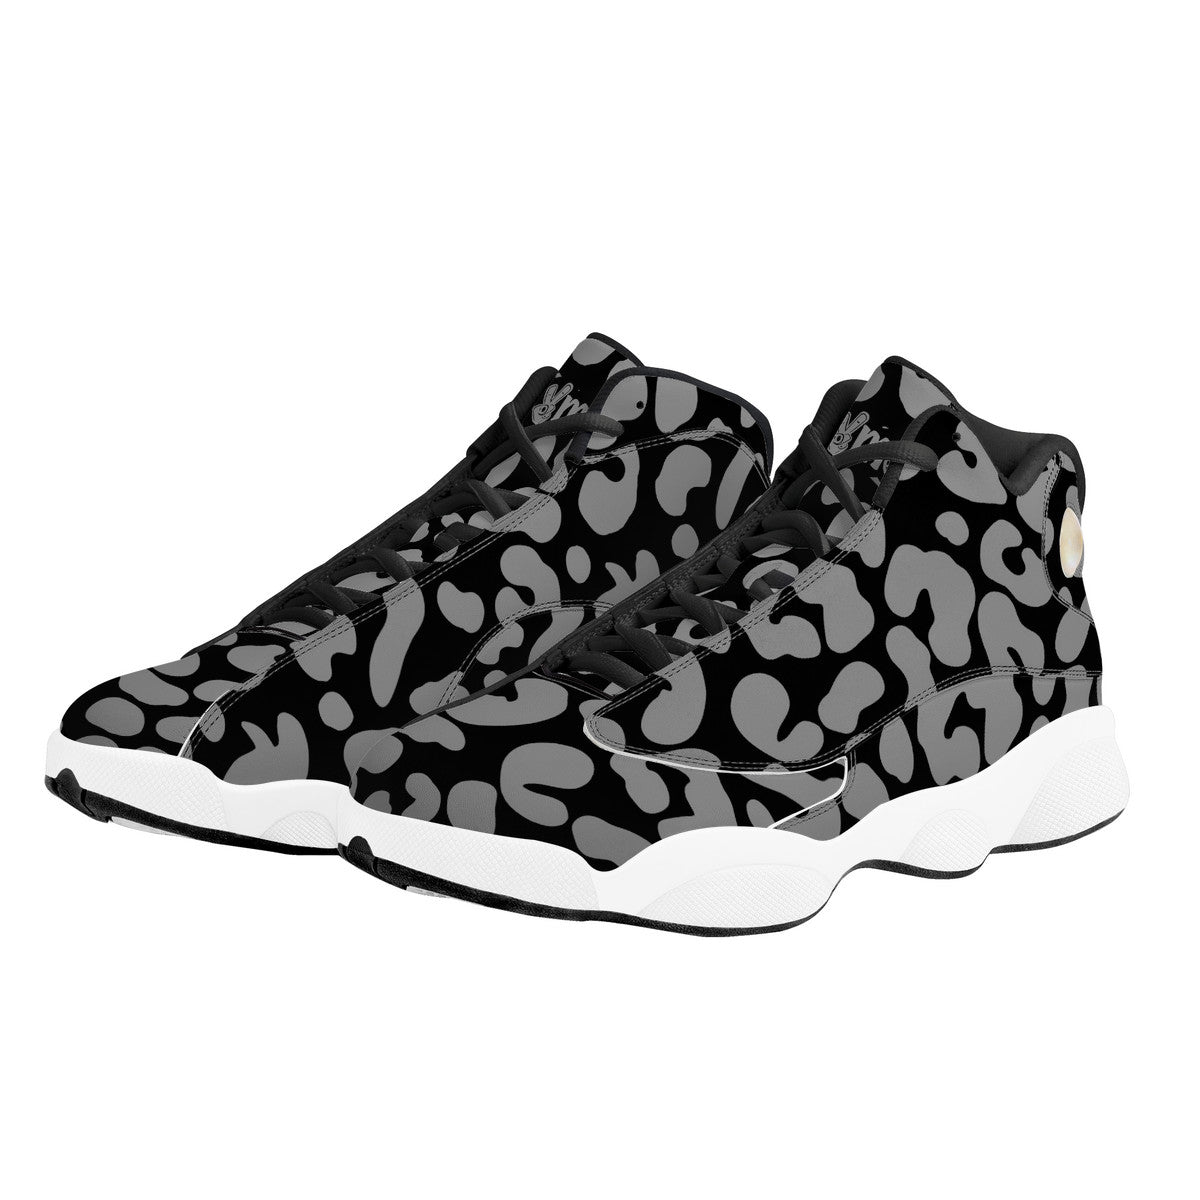 "Mono Leopard" Basketball Shoes